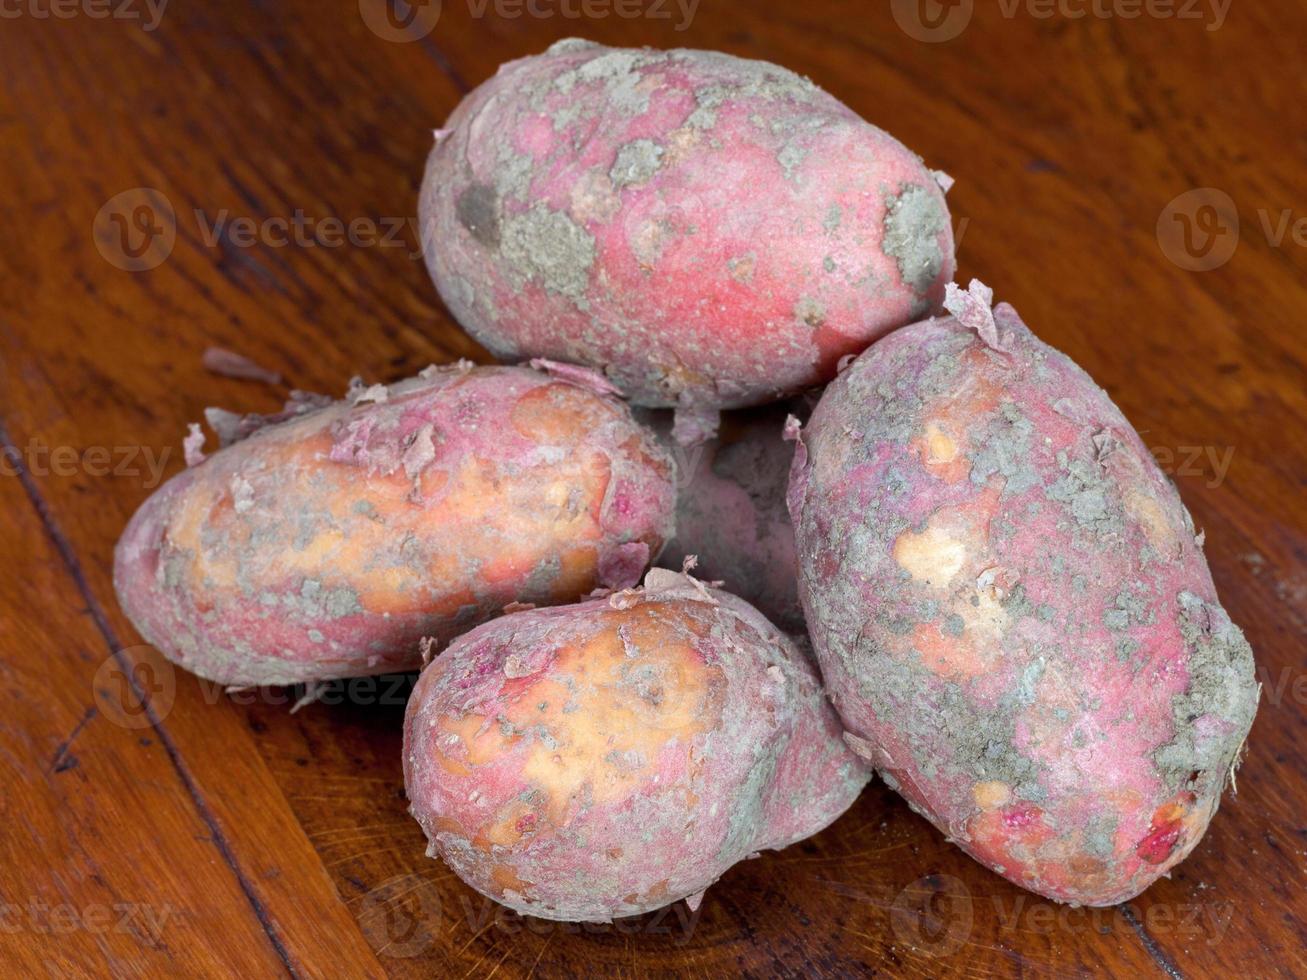 few new pink potatoes photo